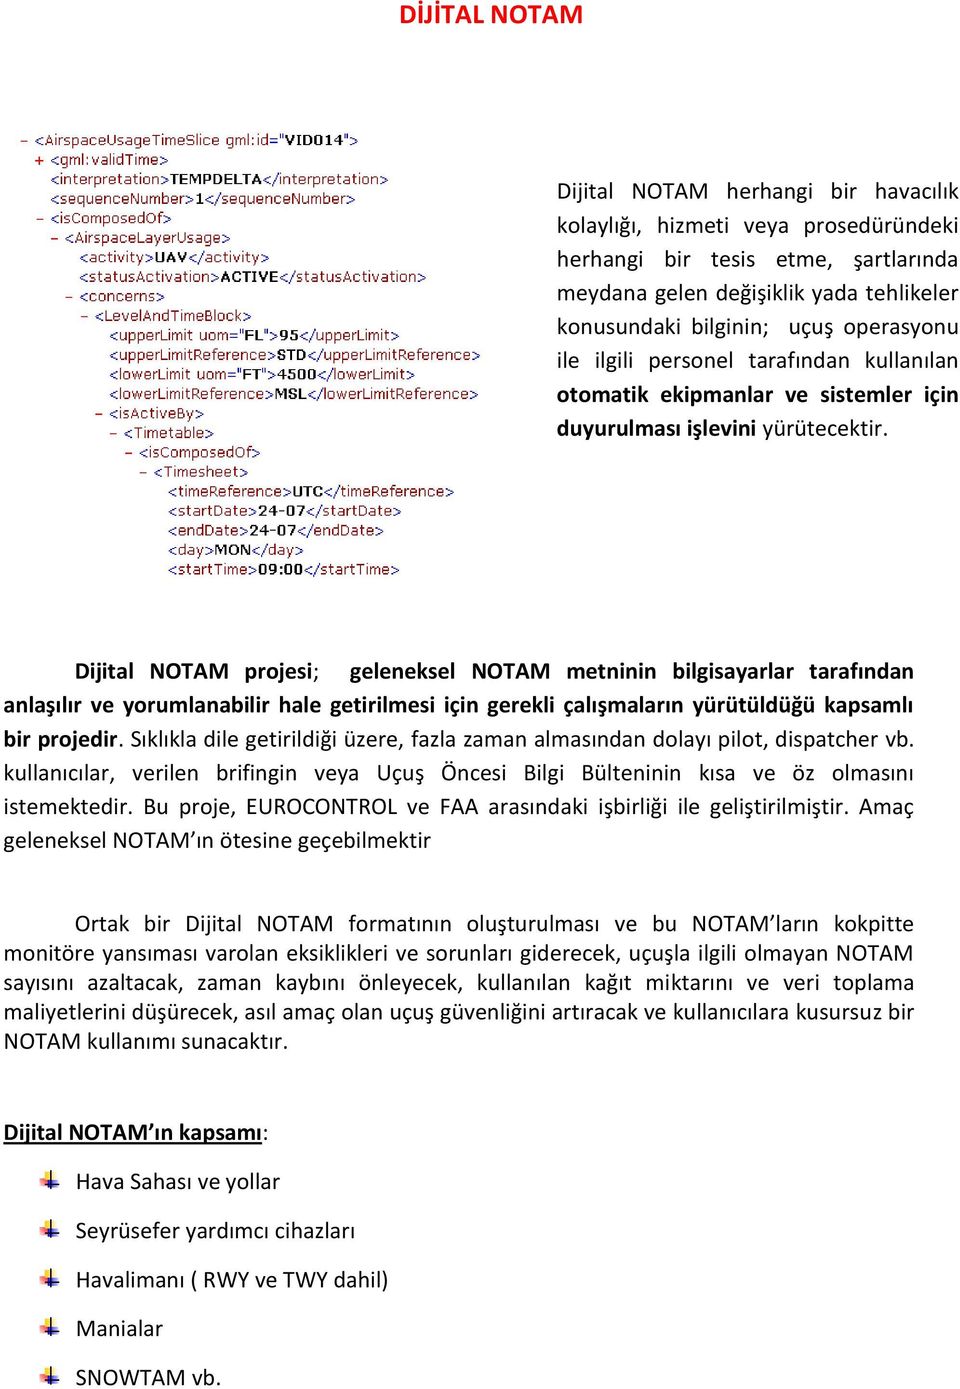 Dijital NOTAM projesi; geleneksel NOTAM metninin bilgisayarlar tarafından anlaşılır ve yorumlanabilir hale getirilmesi için gerekli çalışmaların yürütüldüğü kapsamlı bir projedir.